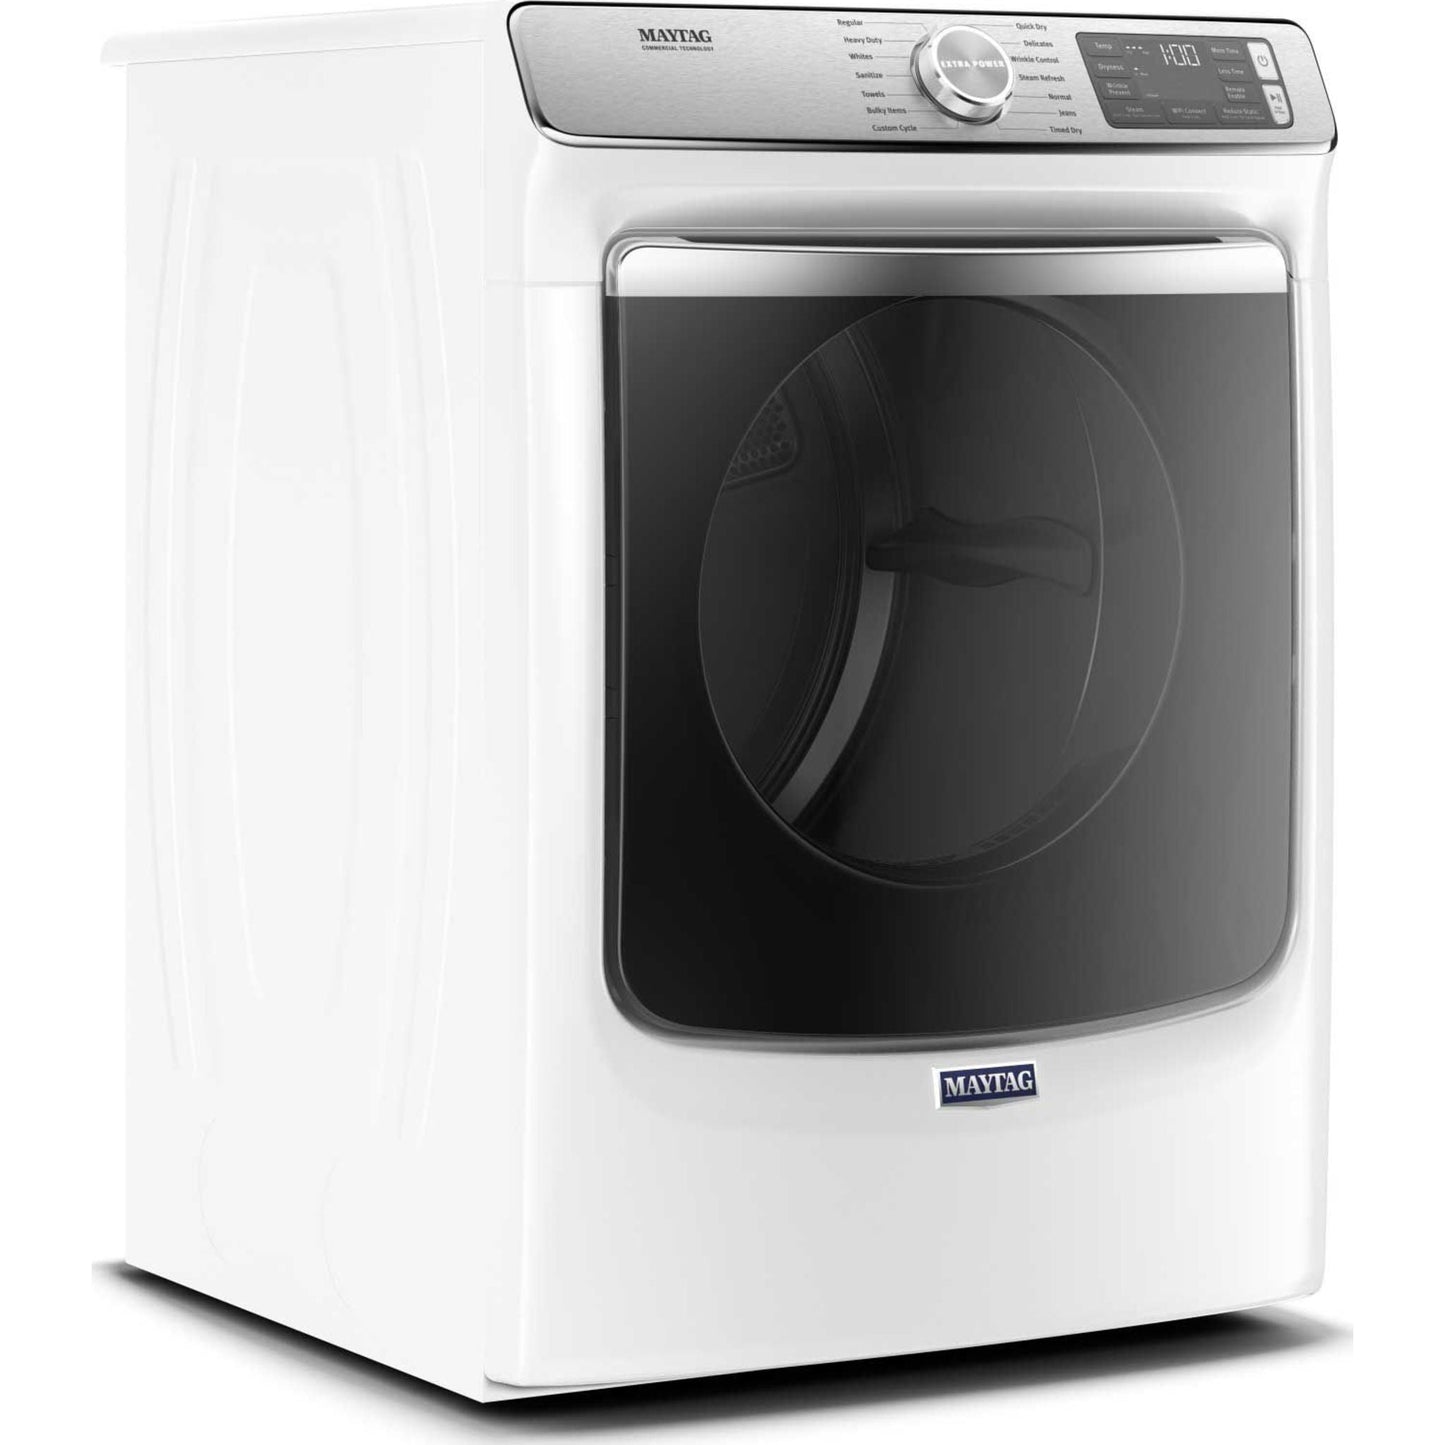 Maytag Dryer (YMED8630HW) - White